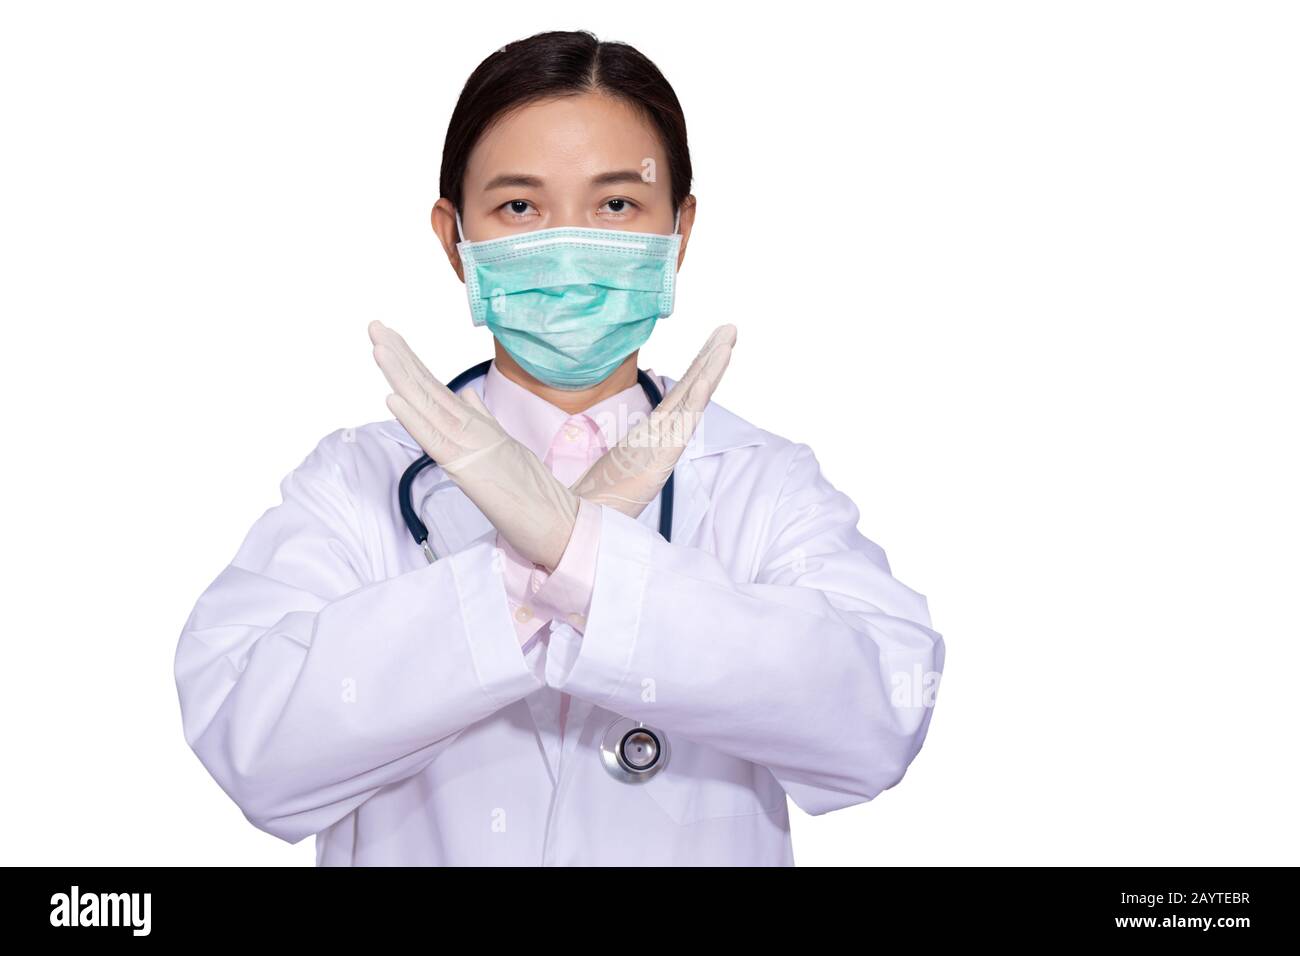 Les médecins asiatiques portent des masques médicaux, élèvent les mains les unes contre les autres comme signe interdisant ou arrêtant de résister ou de prévenir la campagne contre les maladies épidémiques Banque D'Images